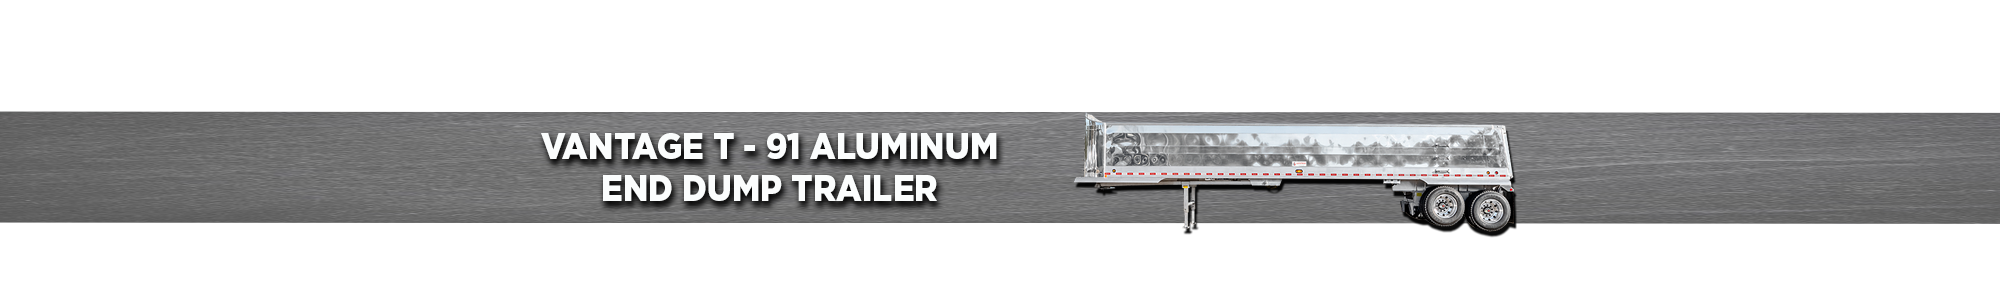 Vantage T-91 Aluminum End Dump Trailer